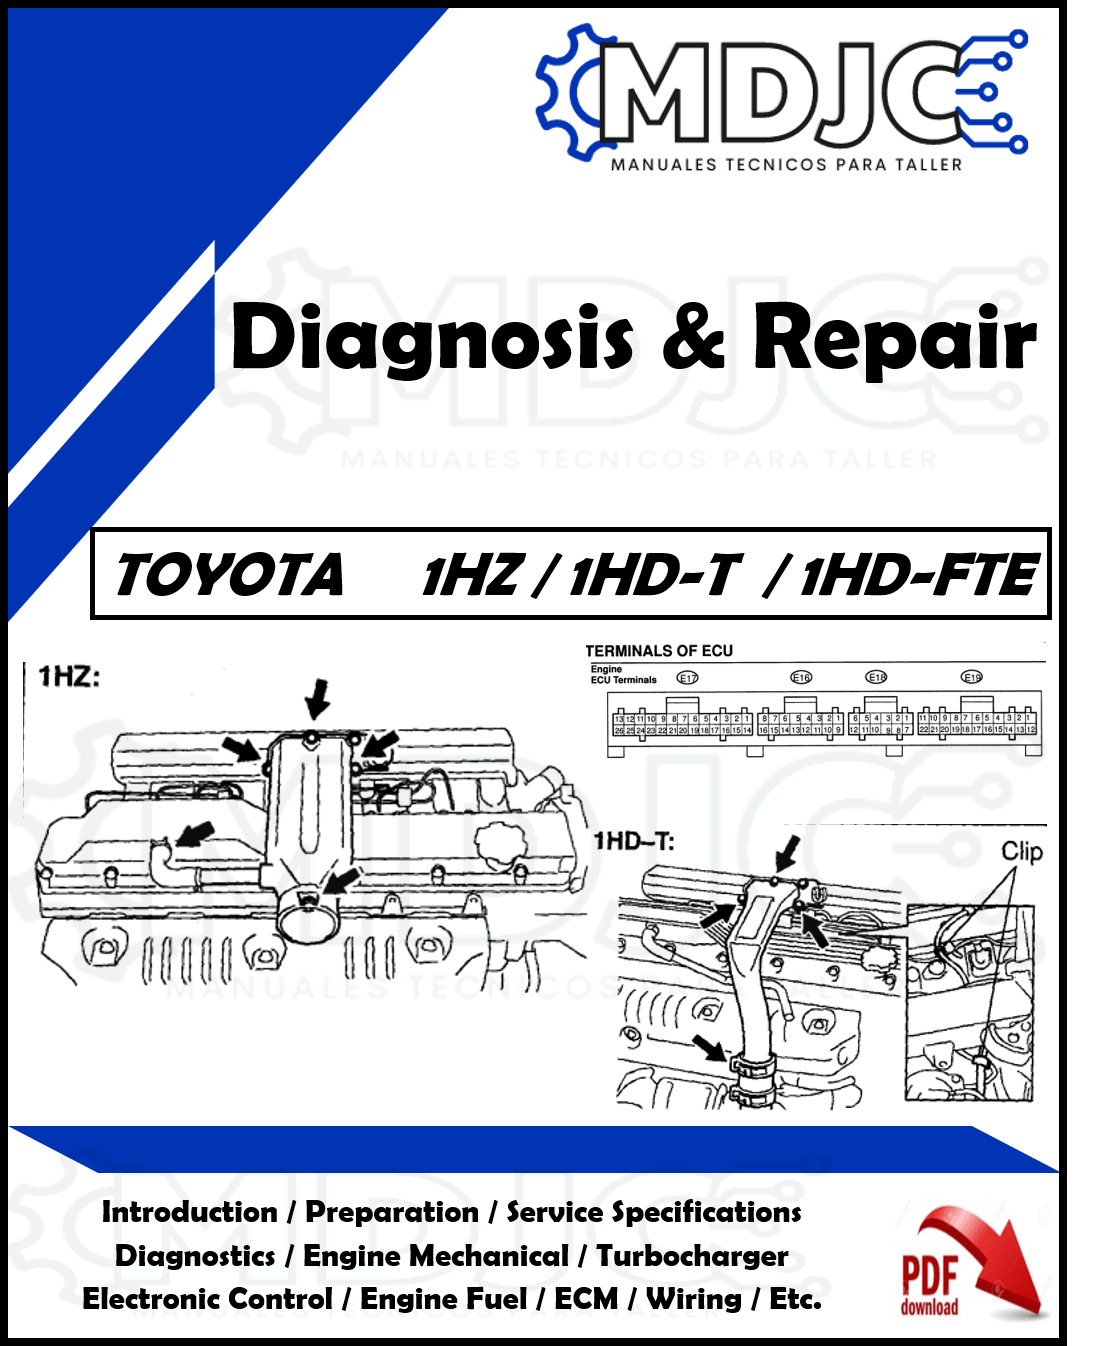 Manual de Taller (Diagnóstico y Reparación) Motor Toyota 1HZ / 1HD-T / 1HD-FTE